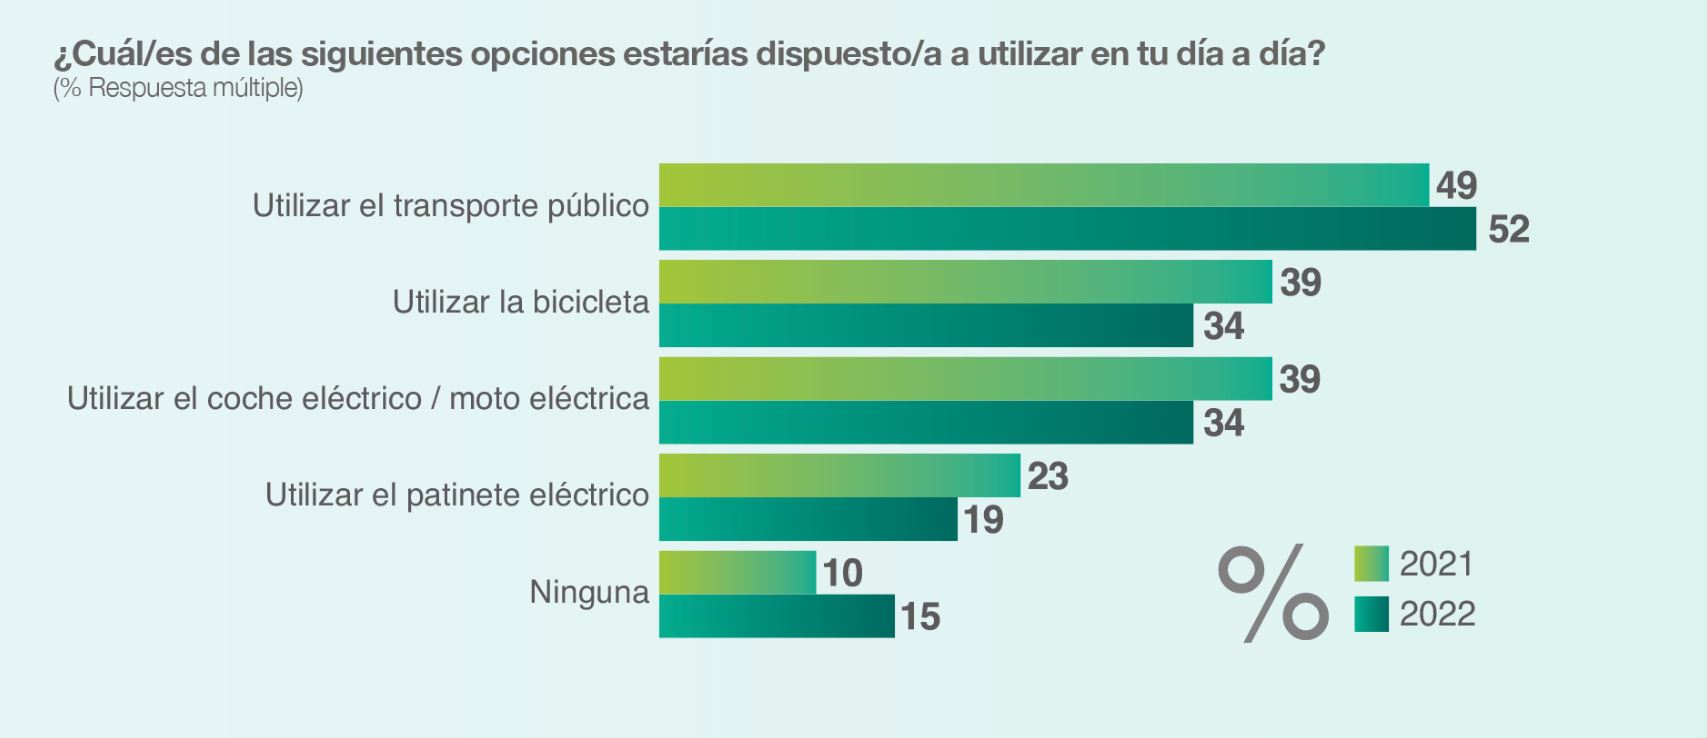 La mitad de los consumidores españoles tiene en cuenta la sostenibilidad a la hora de realizar sus compras